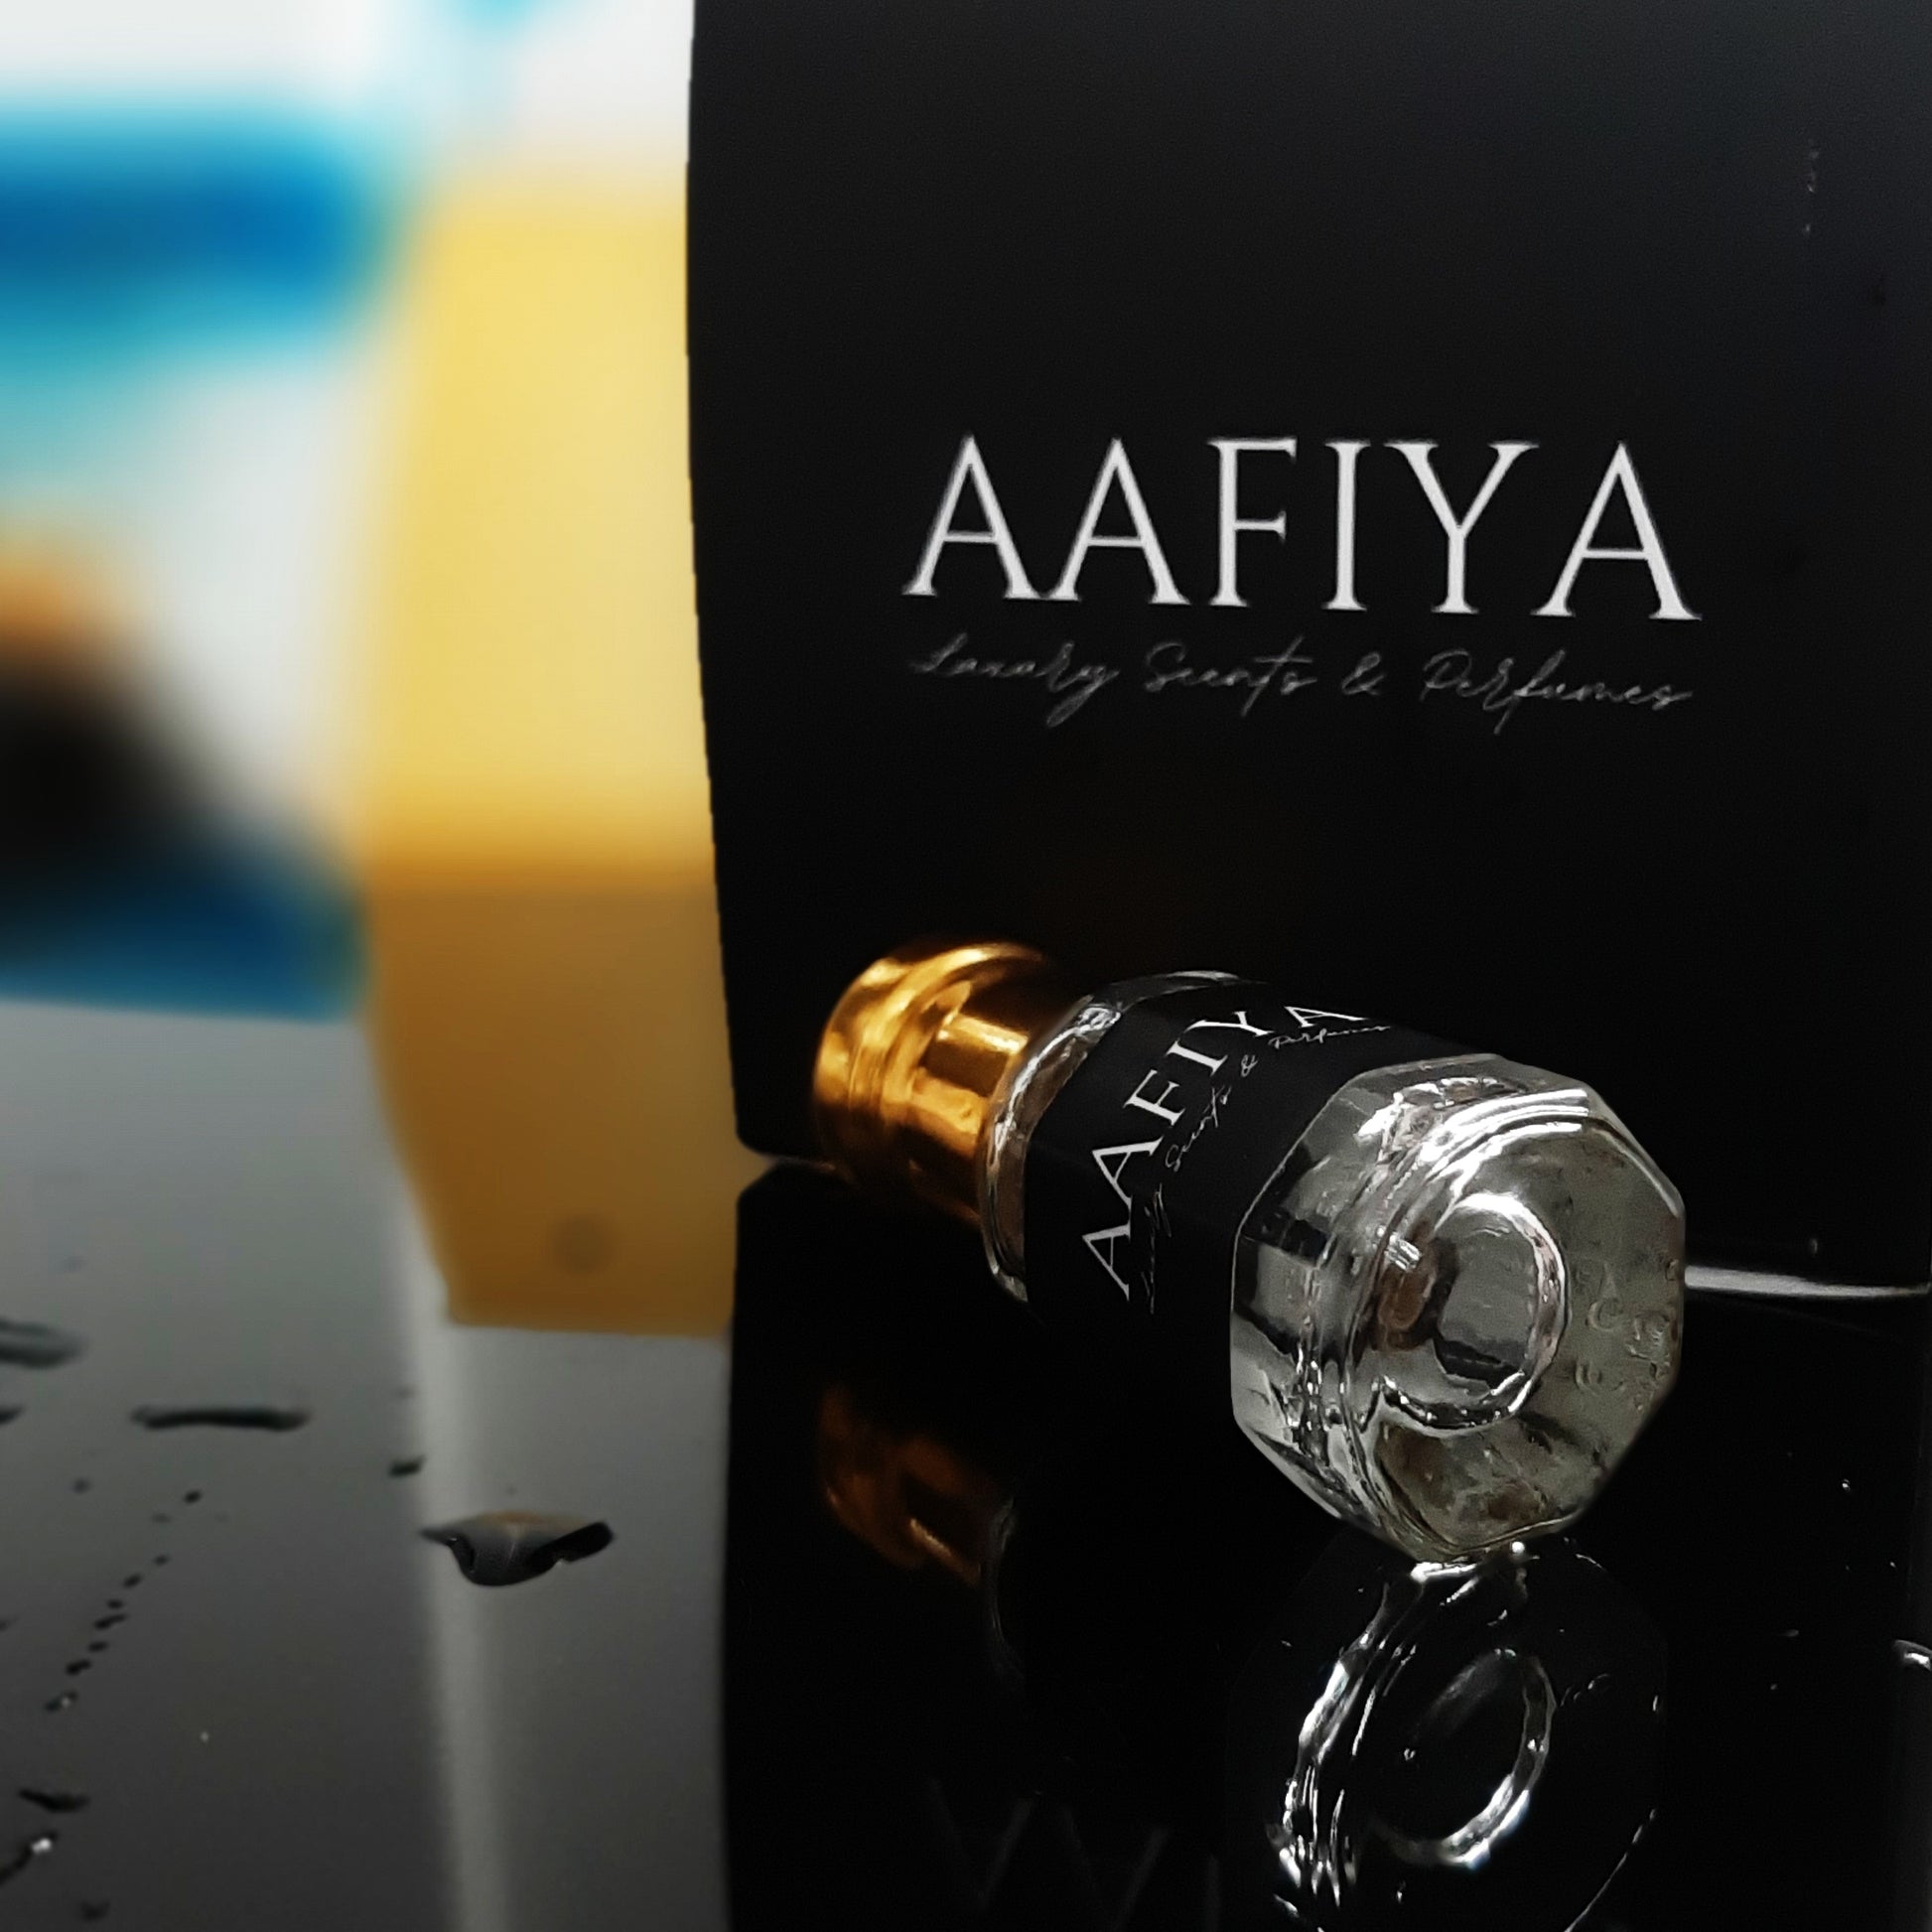 The One Grey - Aafiya Luxury Scents & Perfumes